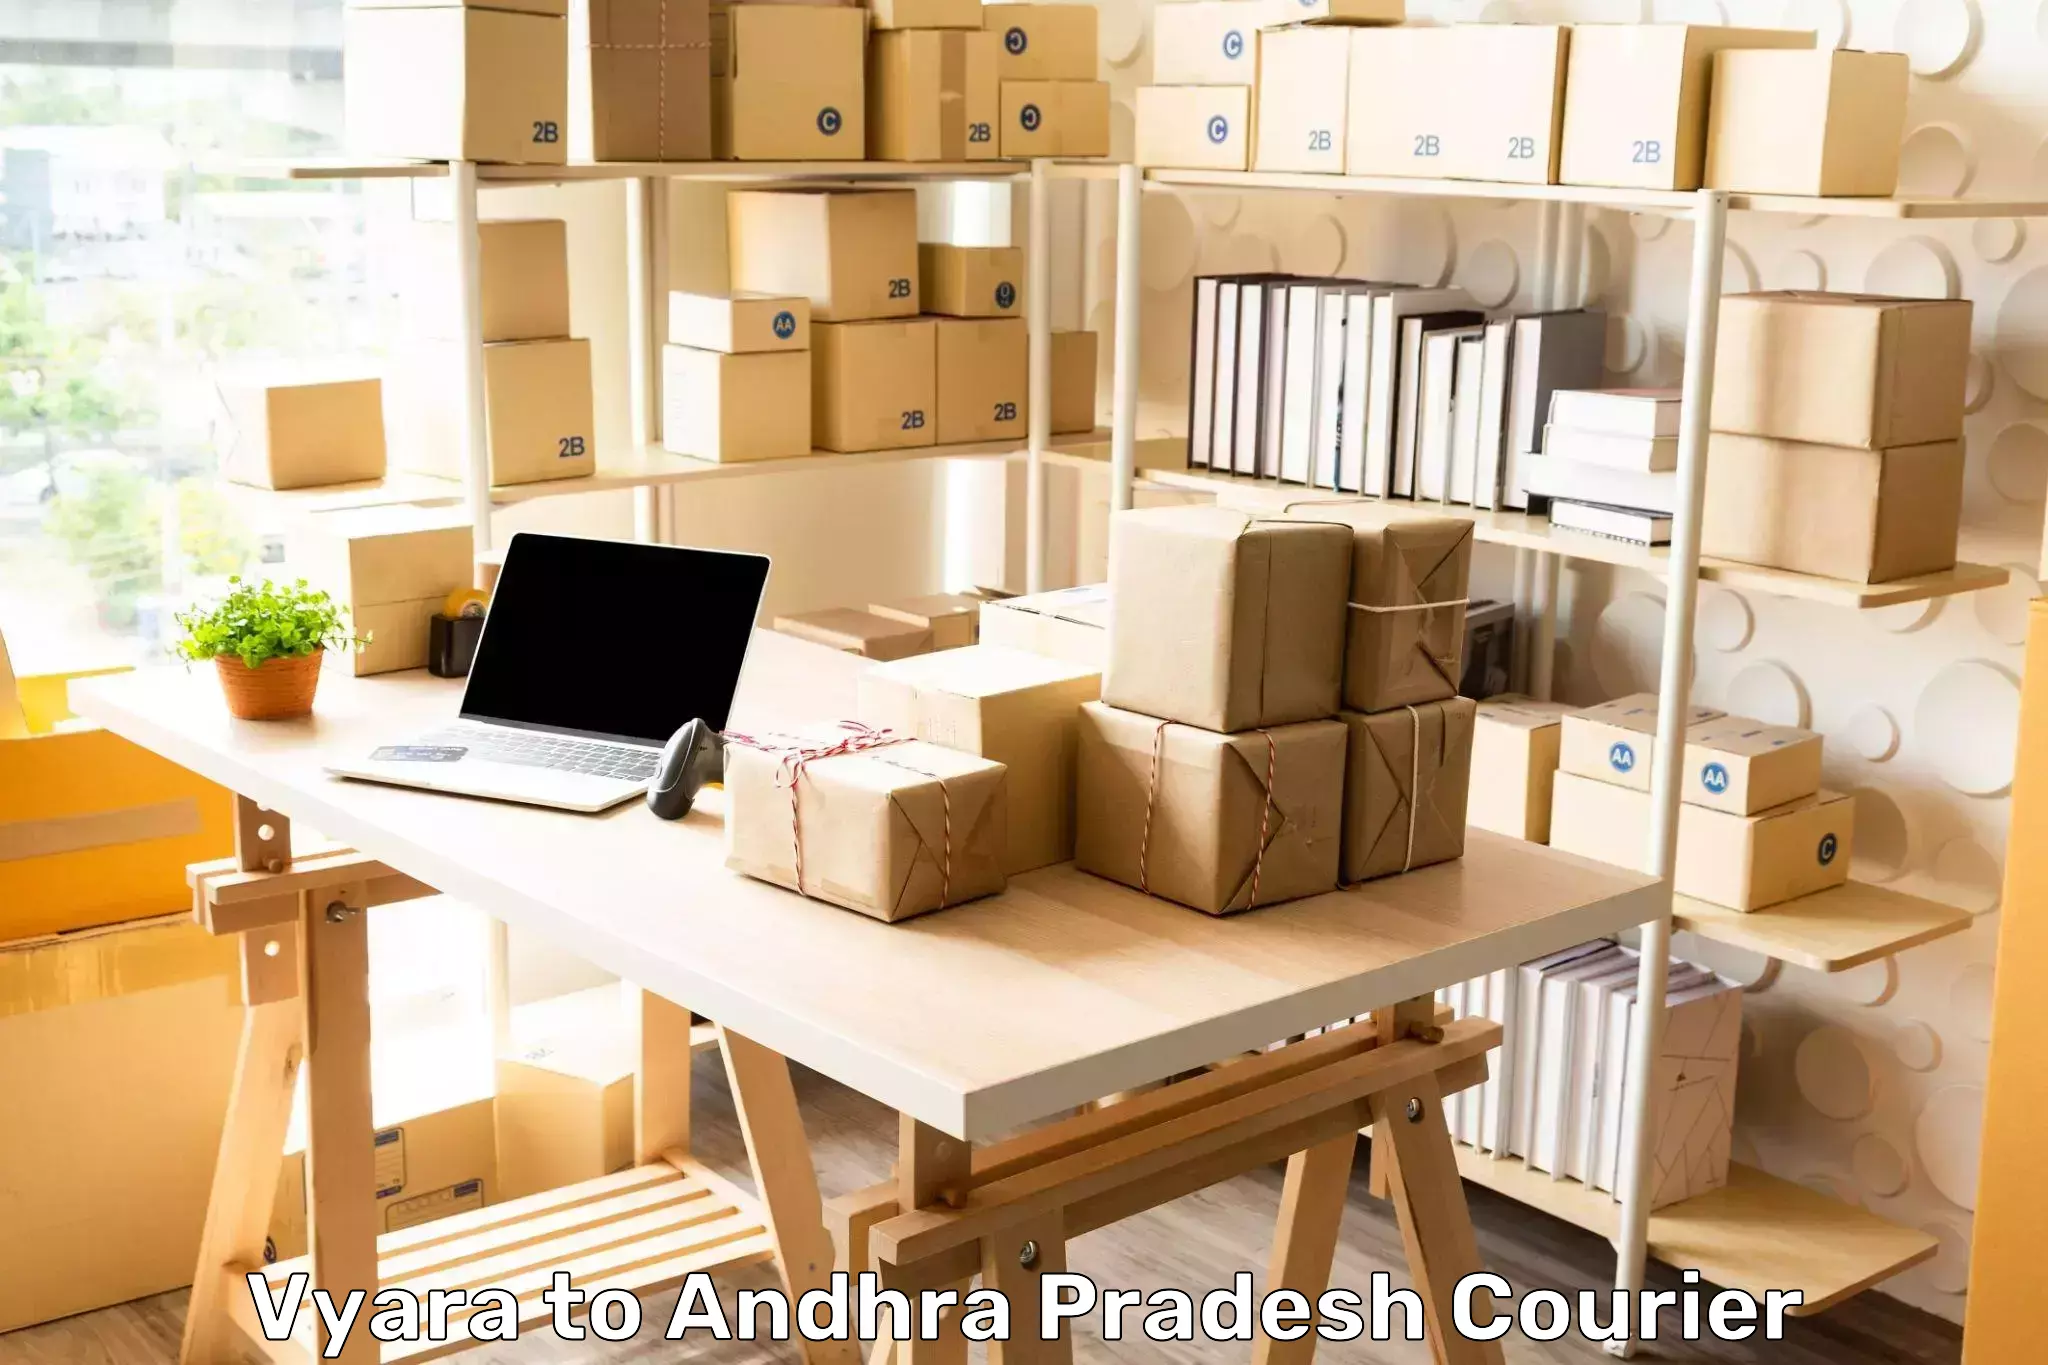 E-commerce shipping partnerships Vyara to Andhra Pradesh